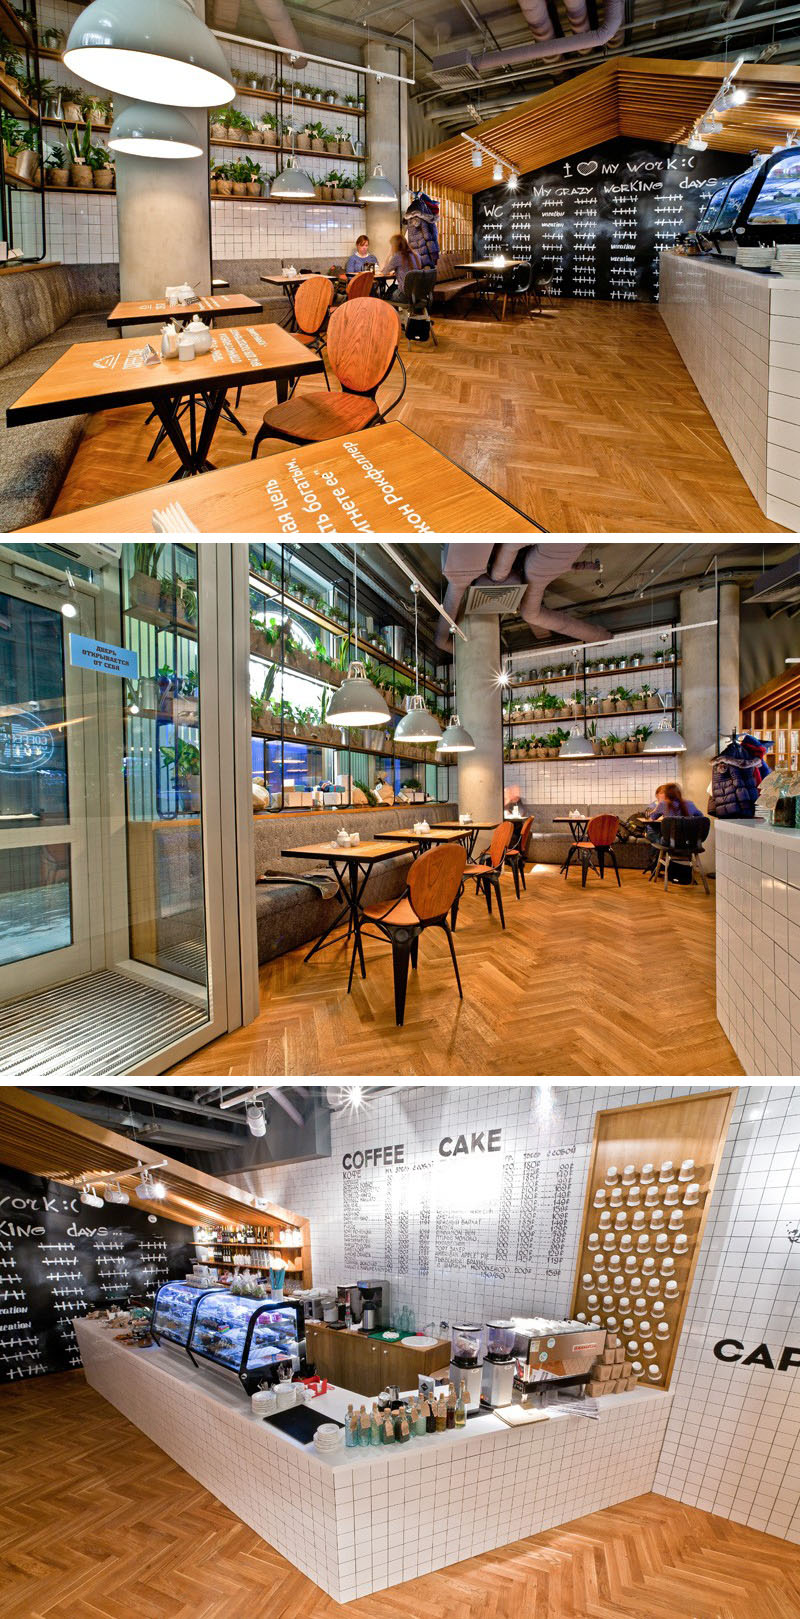 Это современное кафе изобилует растениями и отличается уникальной деревянной структурой, в которой размещены их розничные магазины, а также уютные скамейки.